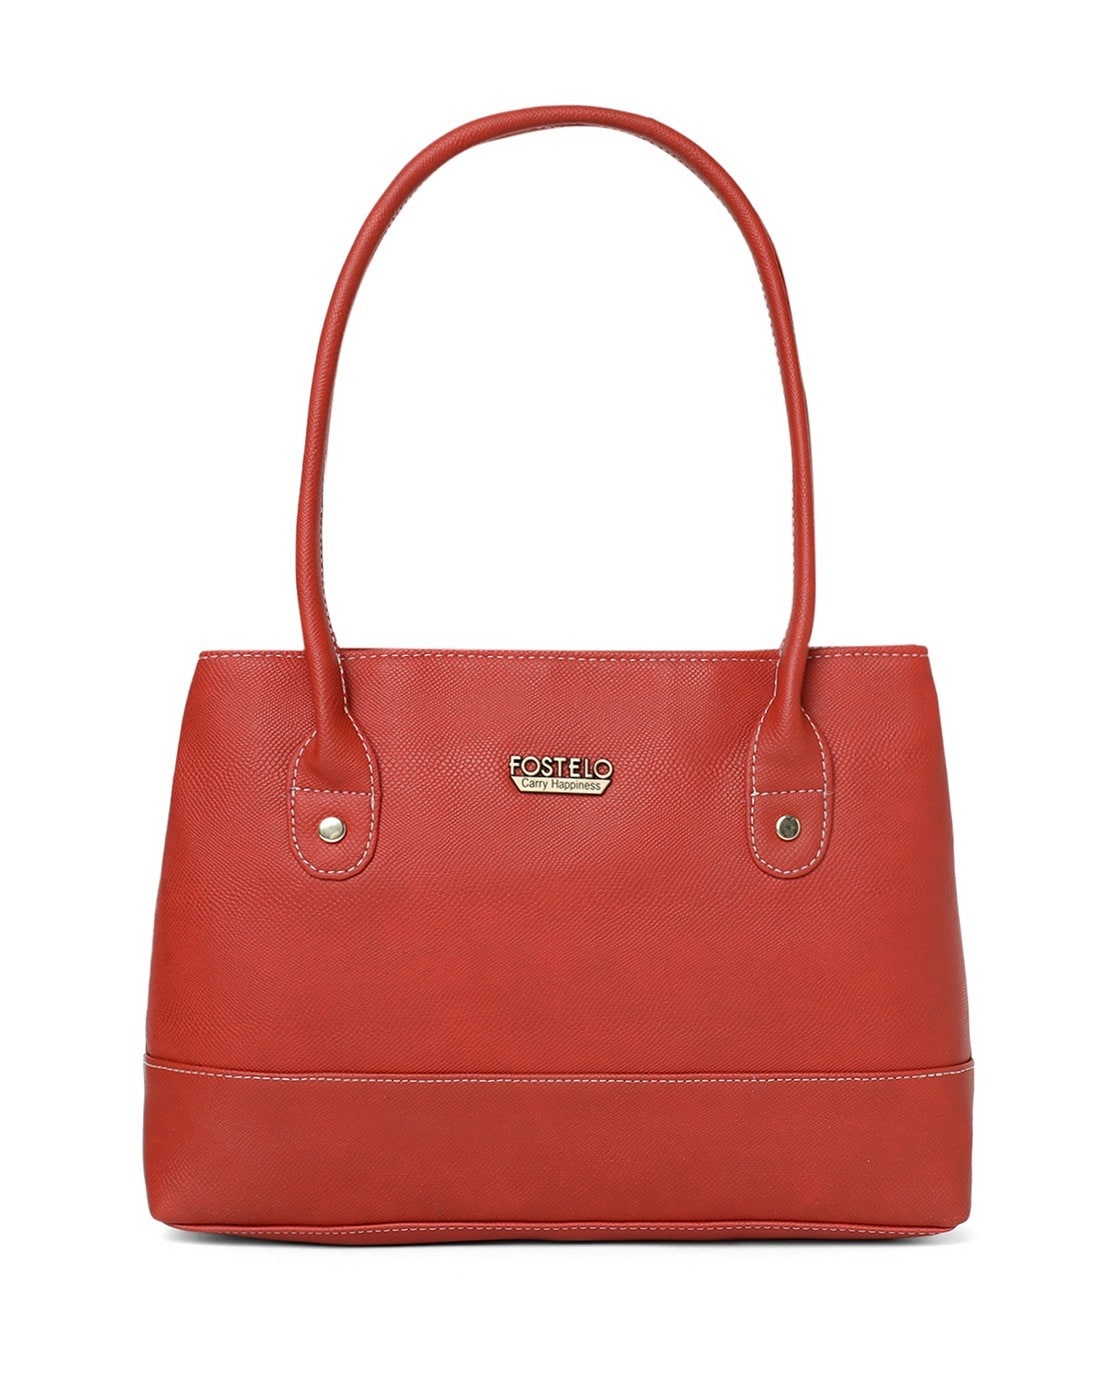 Buy Plama Women Red Hand-held Bag Red Online @ Best Price in India |  Flipkart.com